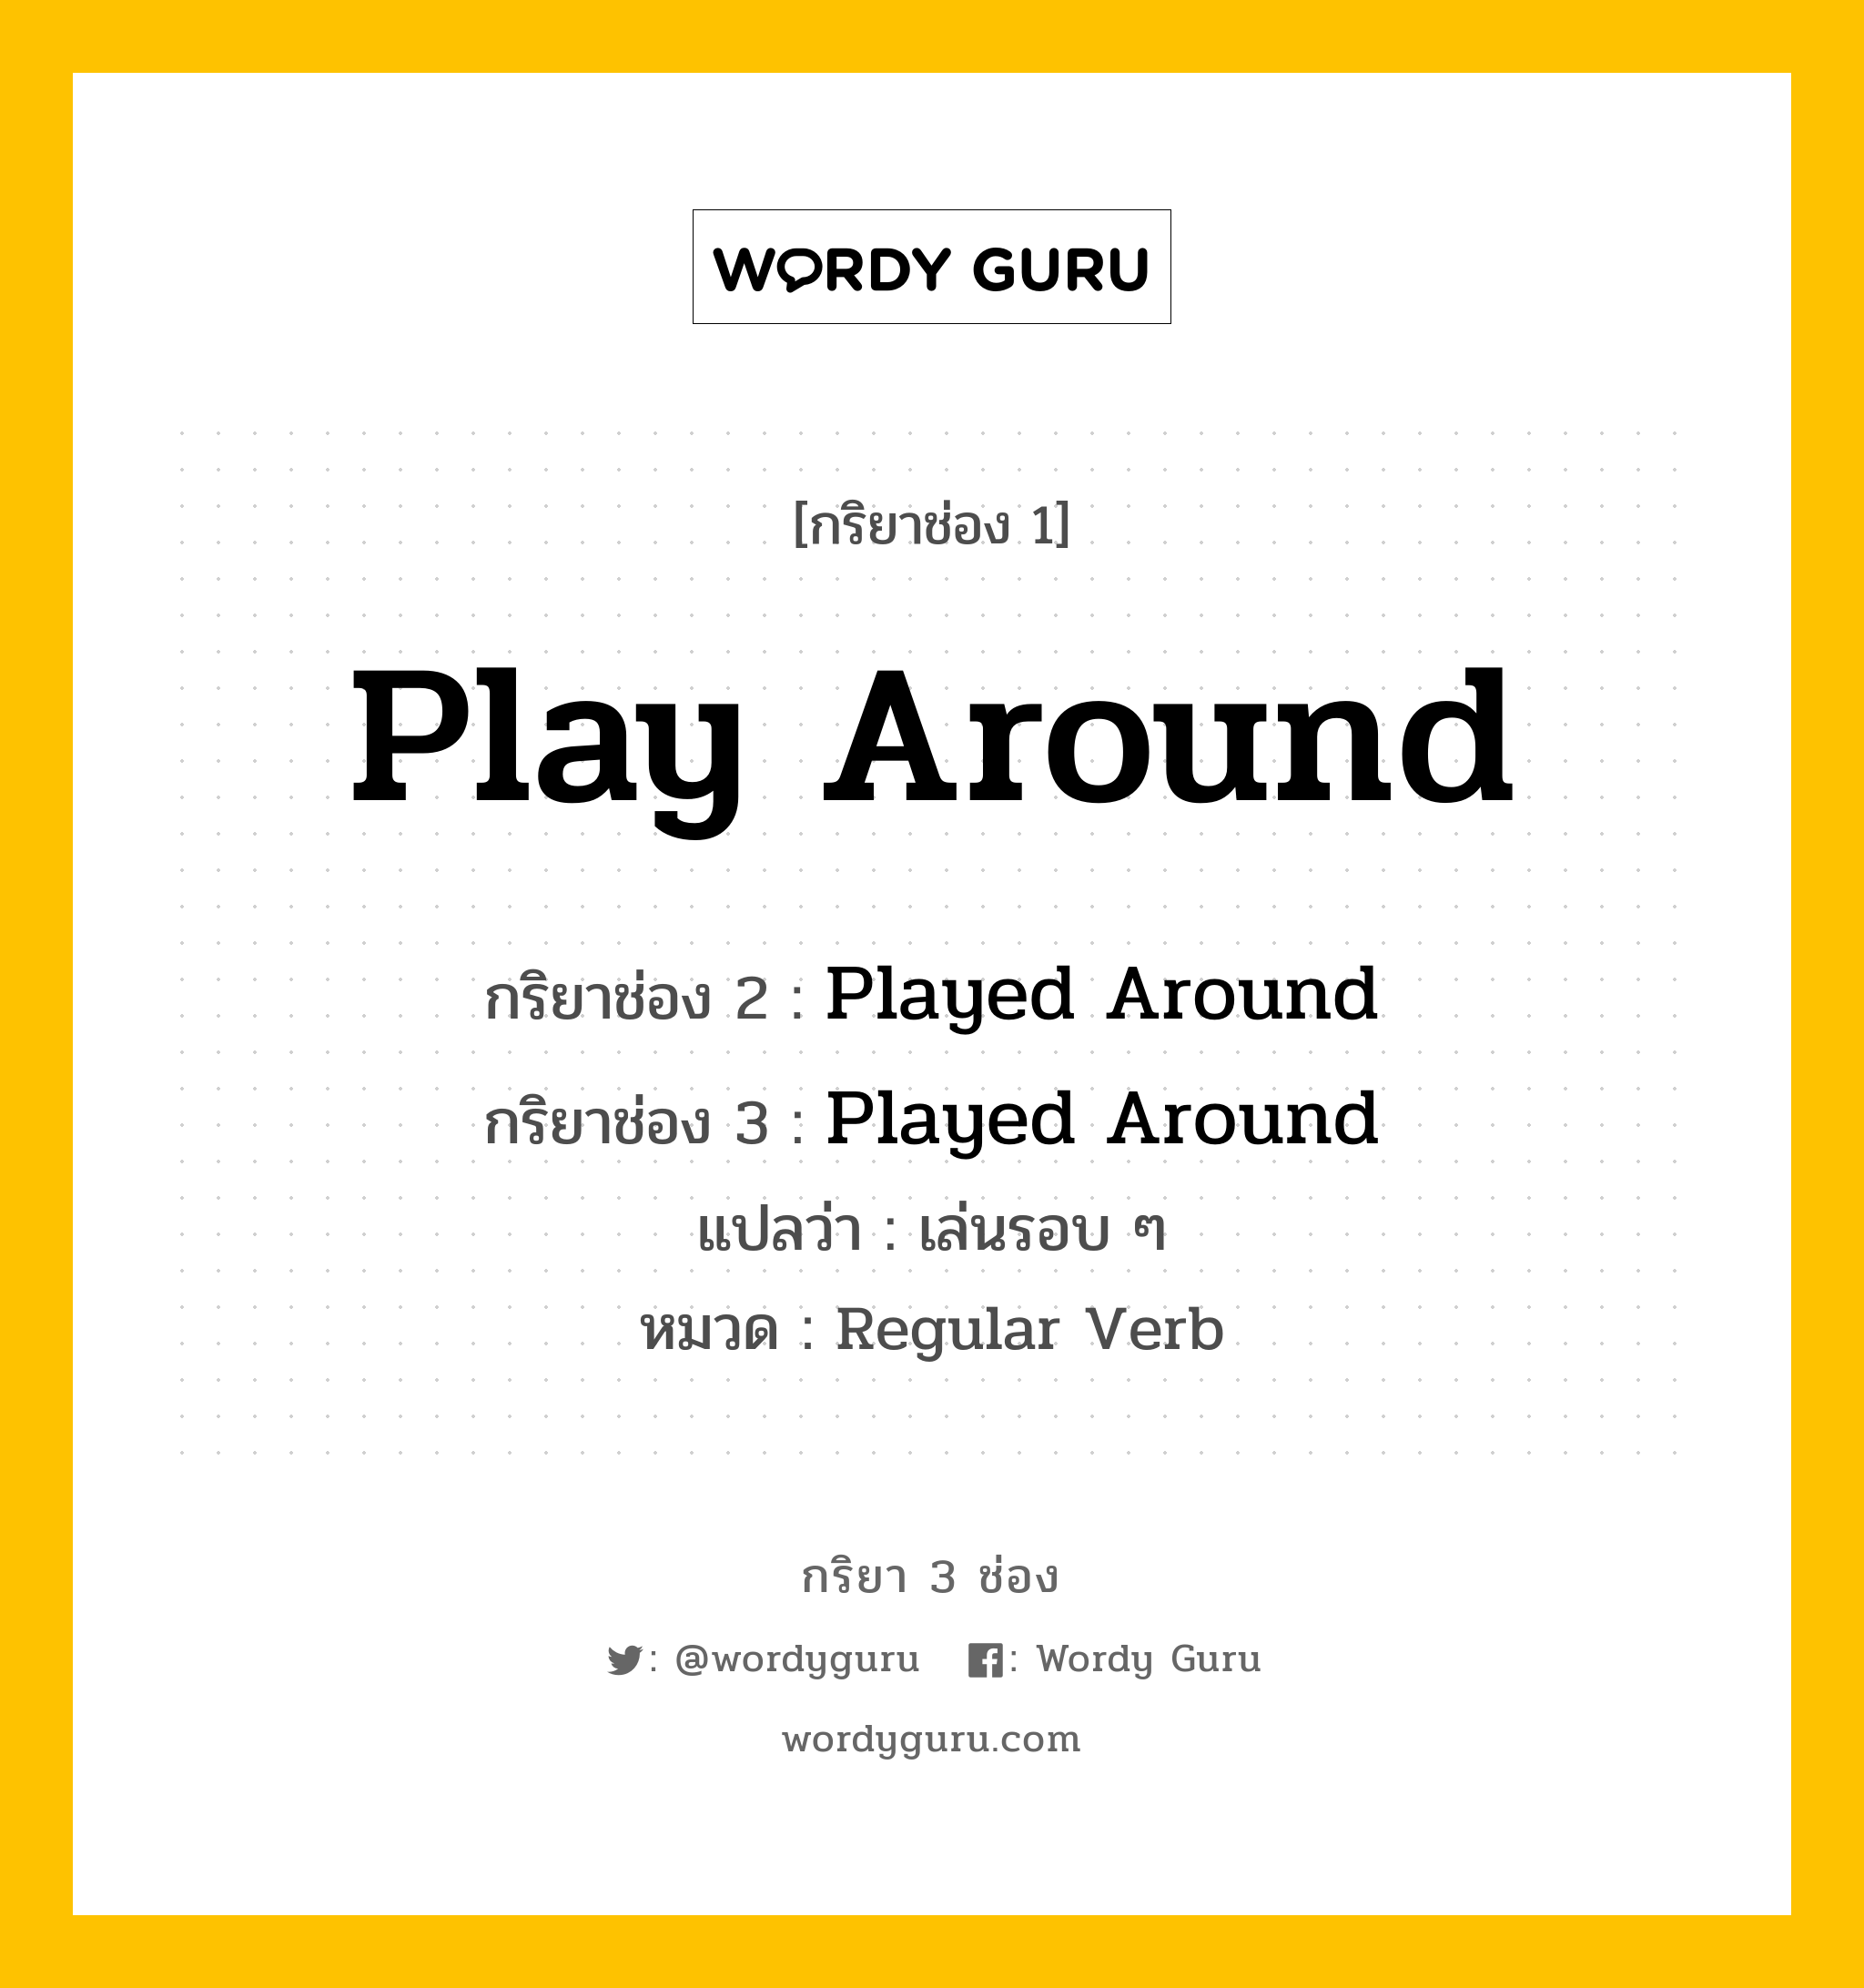 กริยา 3 ช่อง: Play Around ช่อง 2 Play Around ช่อง 3 คืออะไร, กริยาช่อง 1 Play Around กริยาช่อง 2 Played Around กริยาช่อง 3 Played Around แปลว่า เล่นรอบ ๆ หมวด Regular Verb หมวด Regular Verb